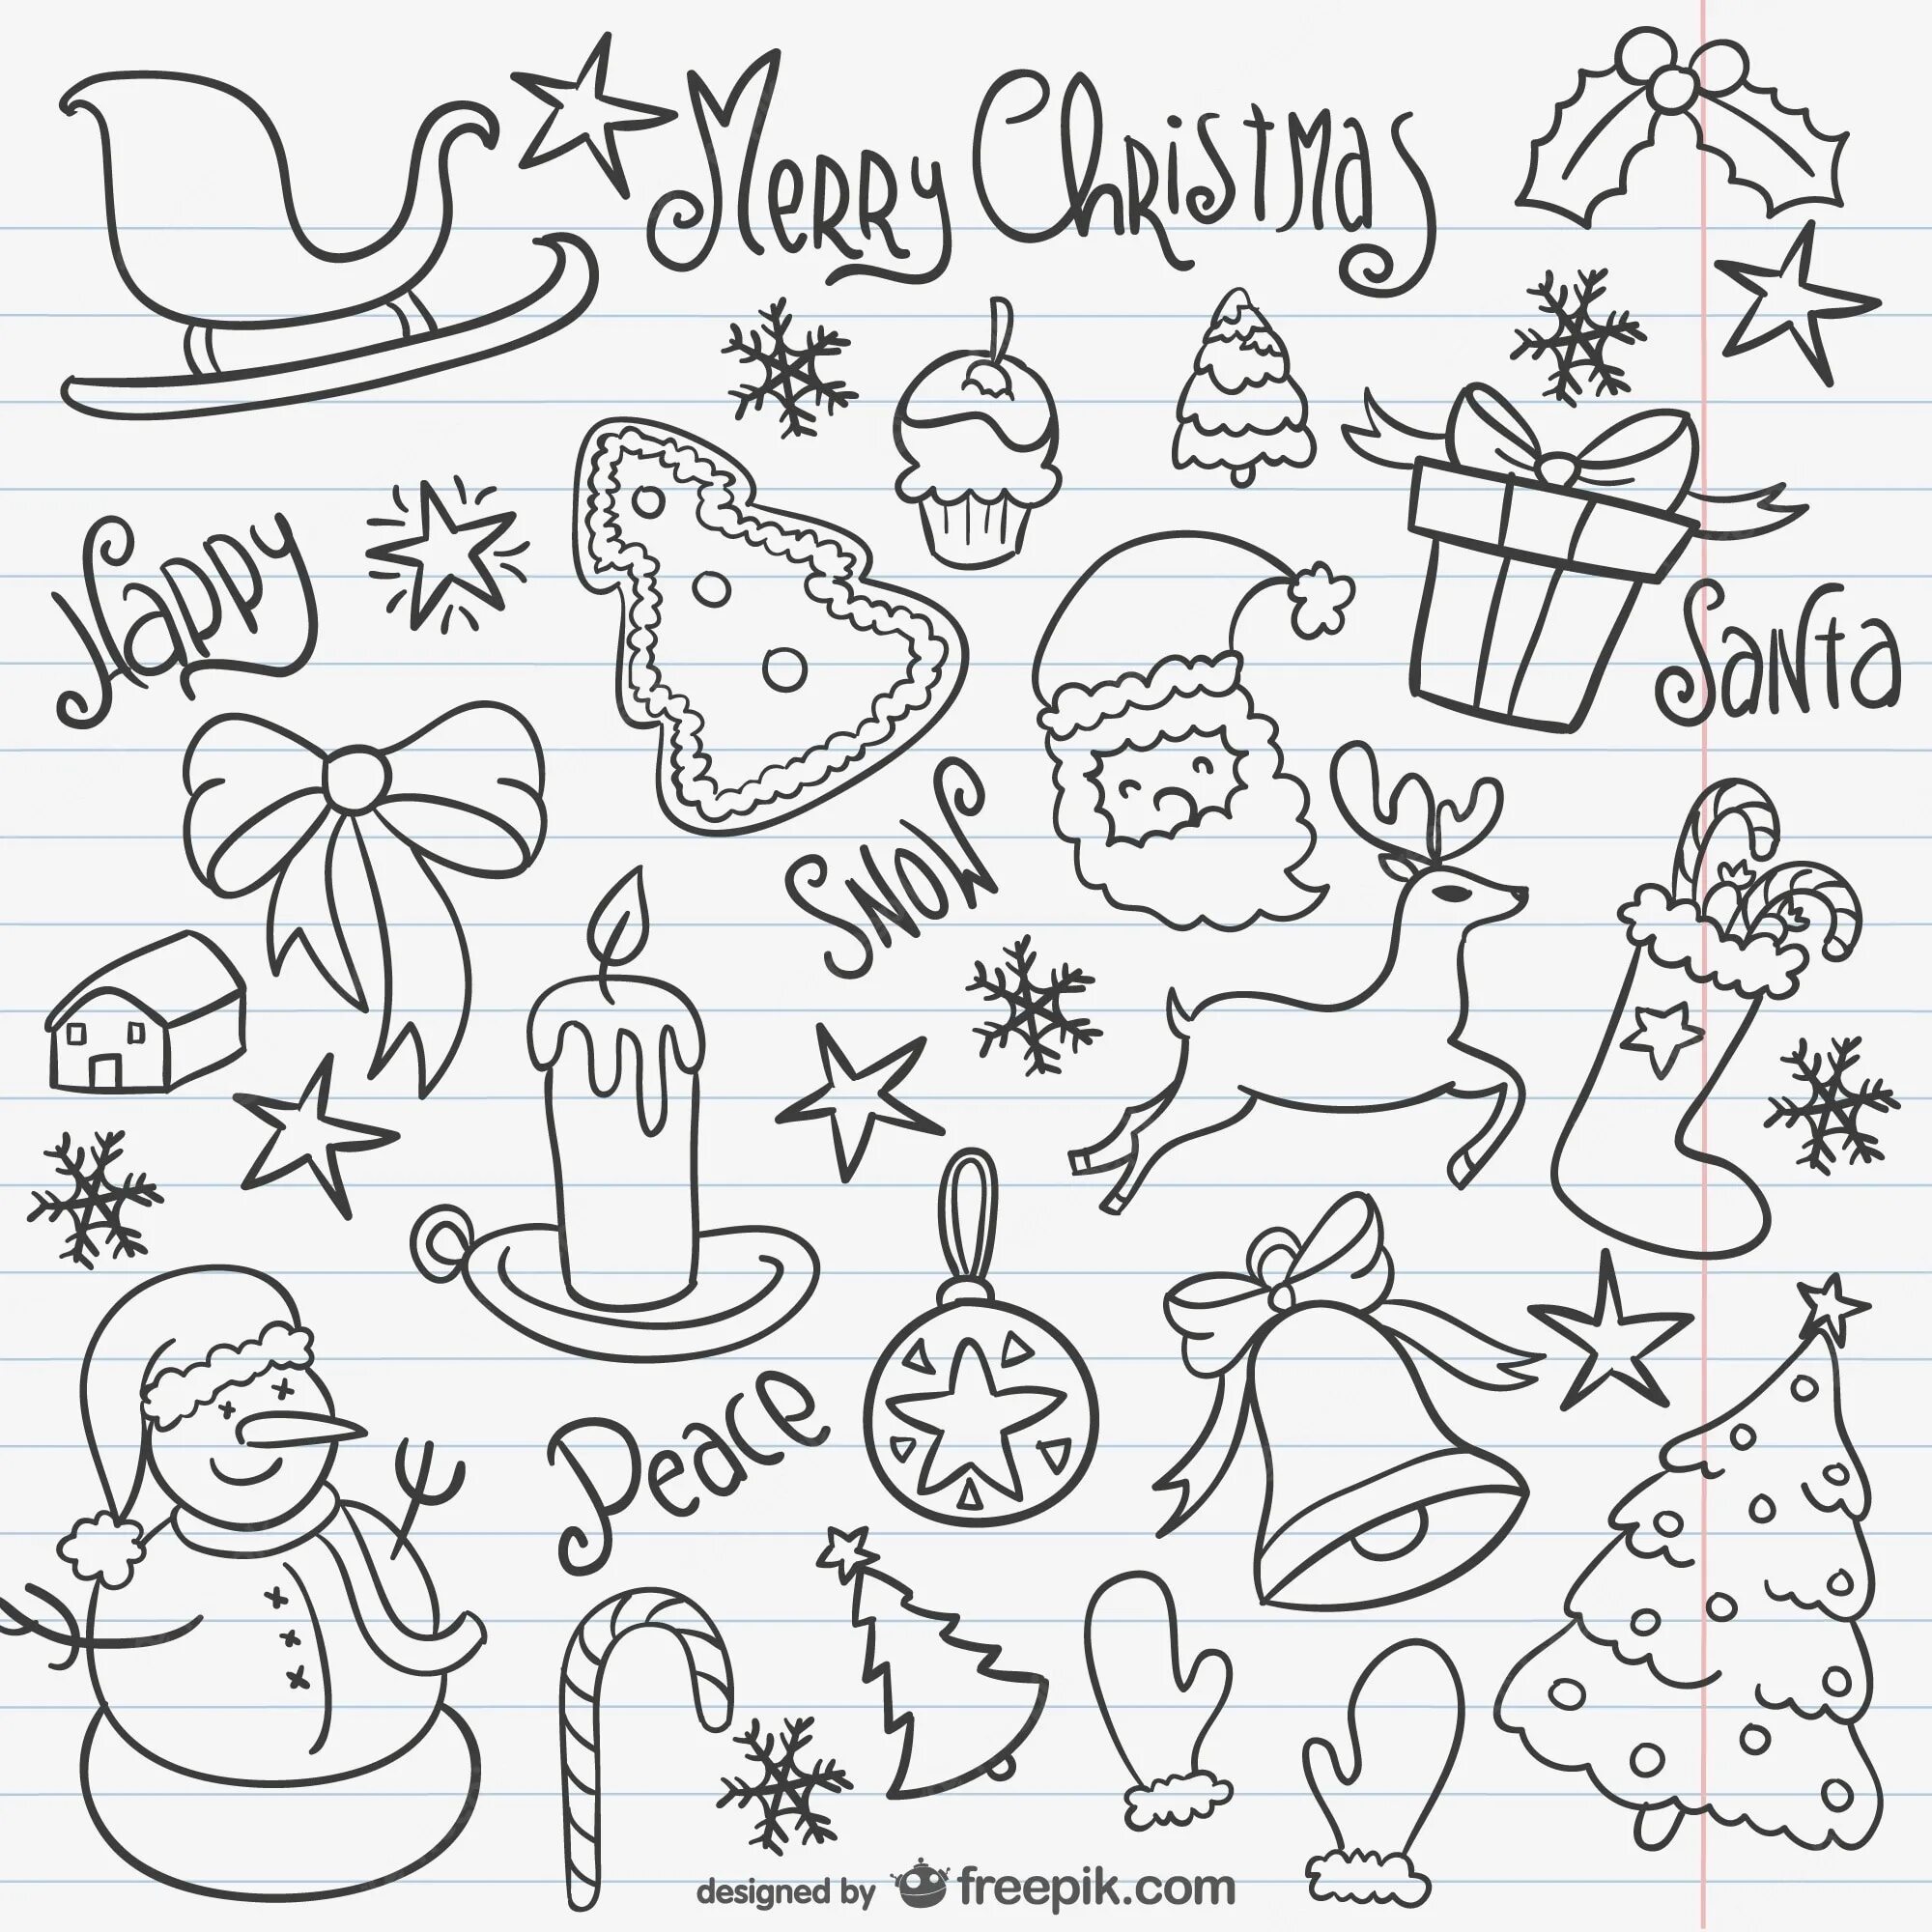 Innovative Christmas drawing